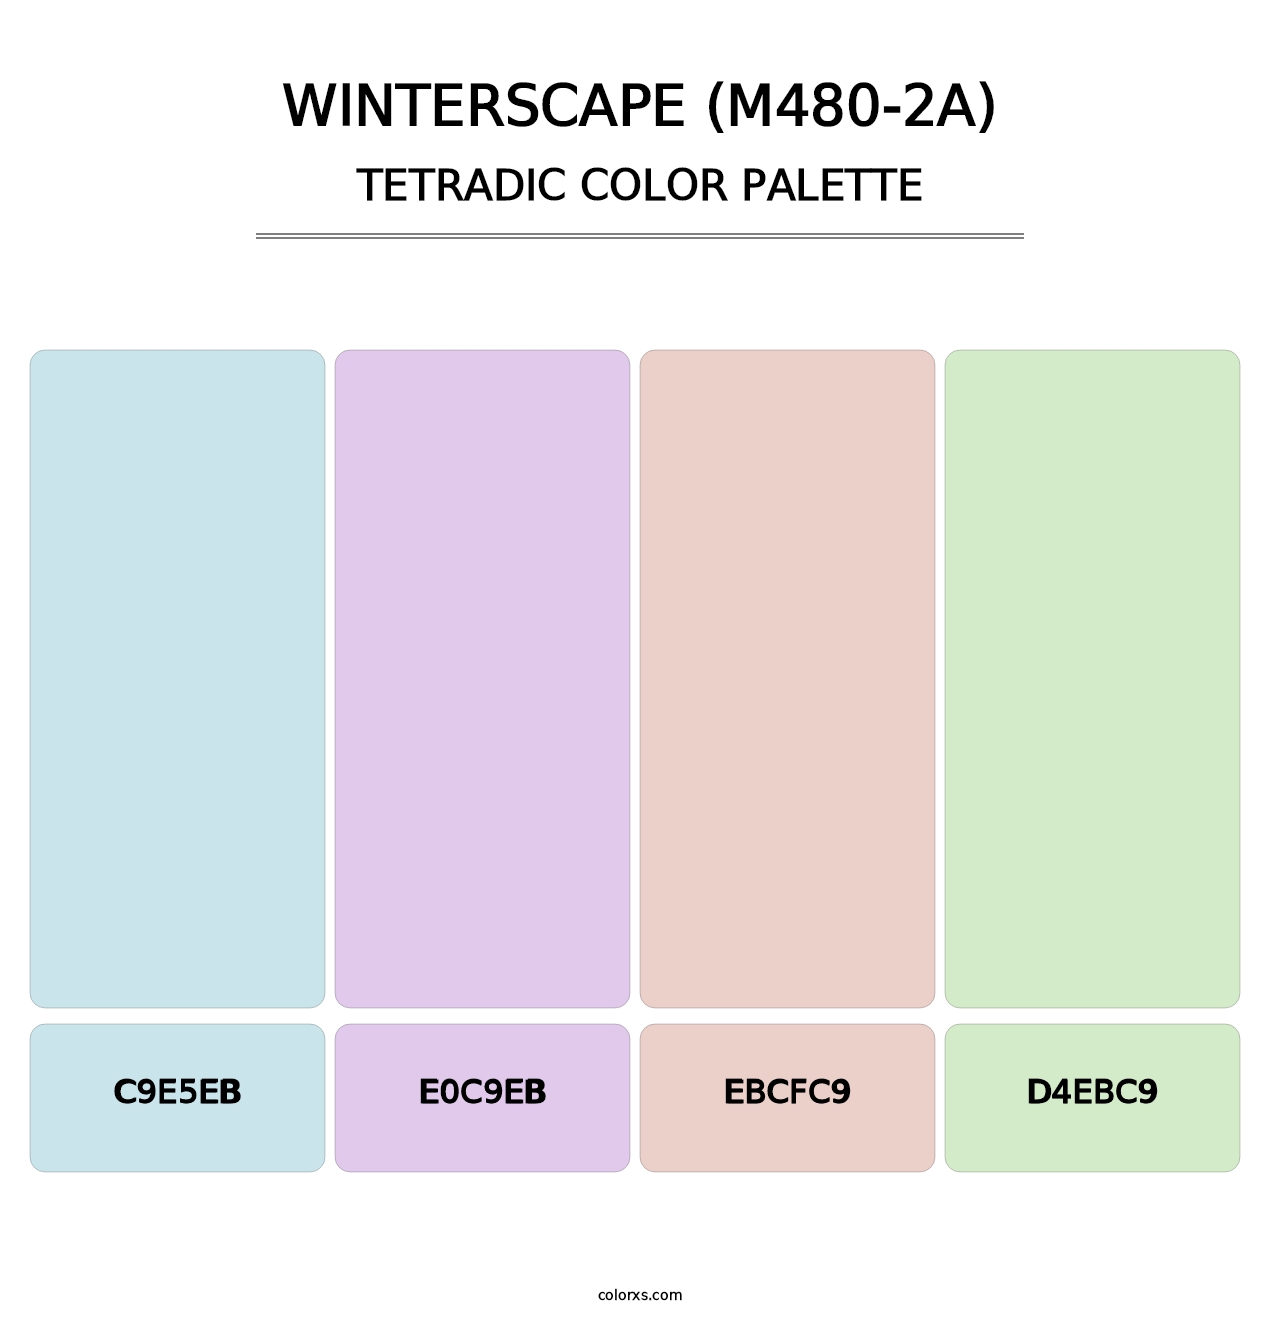 Winterscape (M480-2A) - Tetradic Color Palette